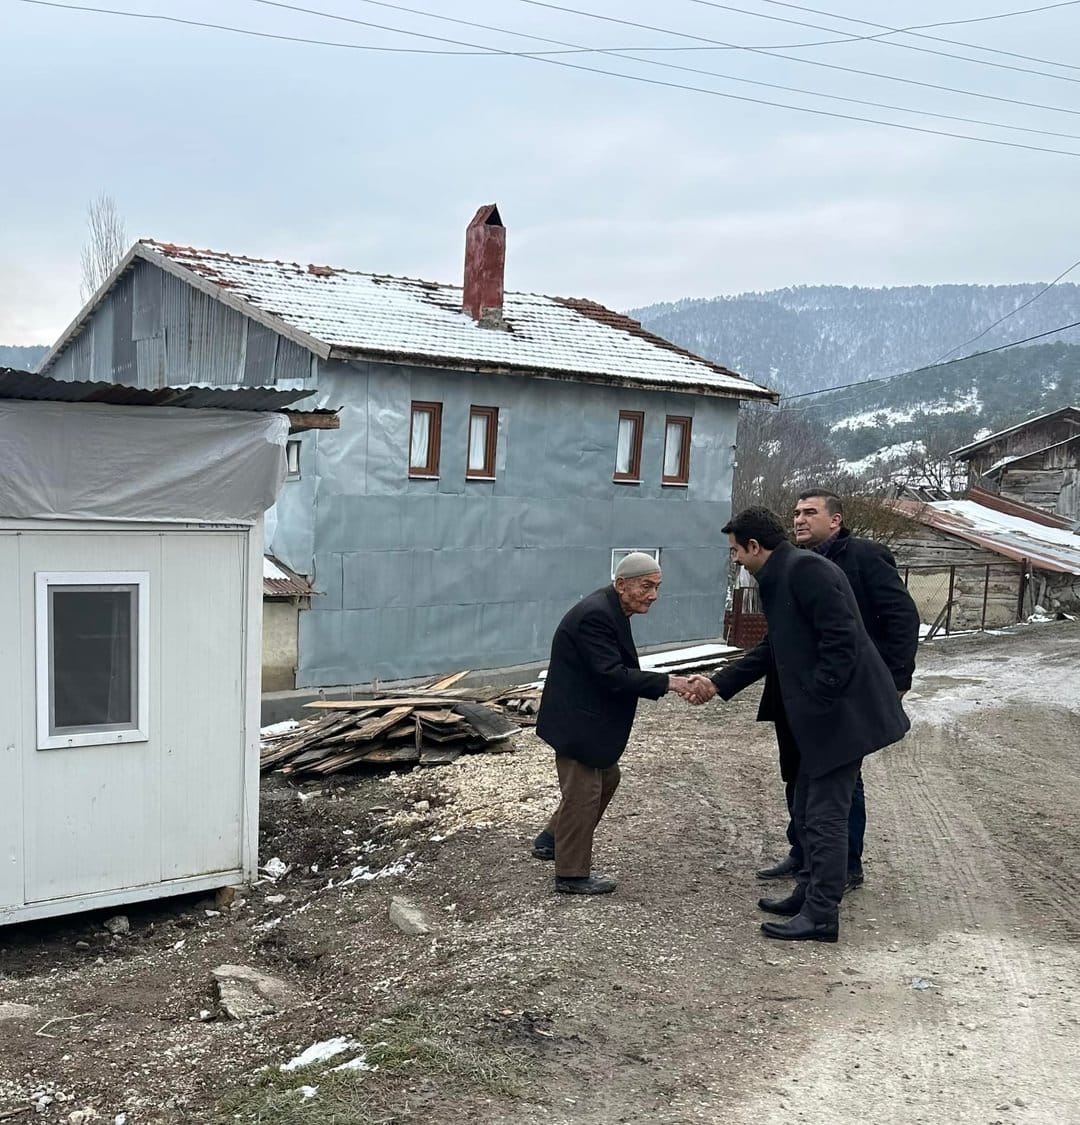 Mudurnu Kaymakamı Ayhan Kalaycioğlu, Dereçetinören Köyü'nde İncelemelerde Bulundu4